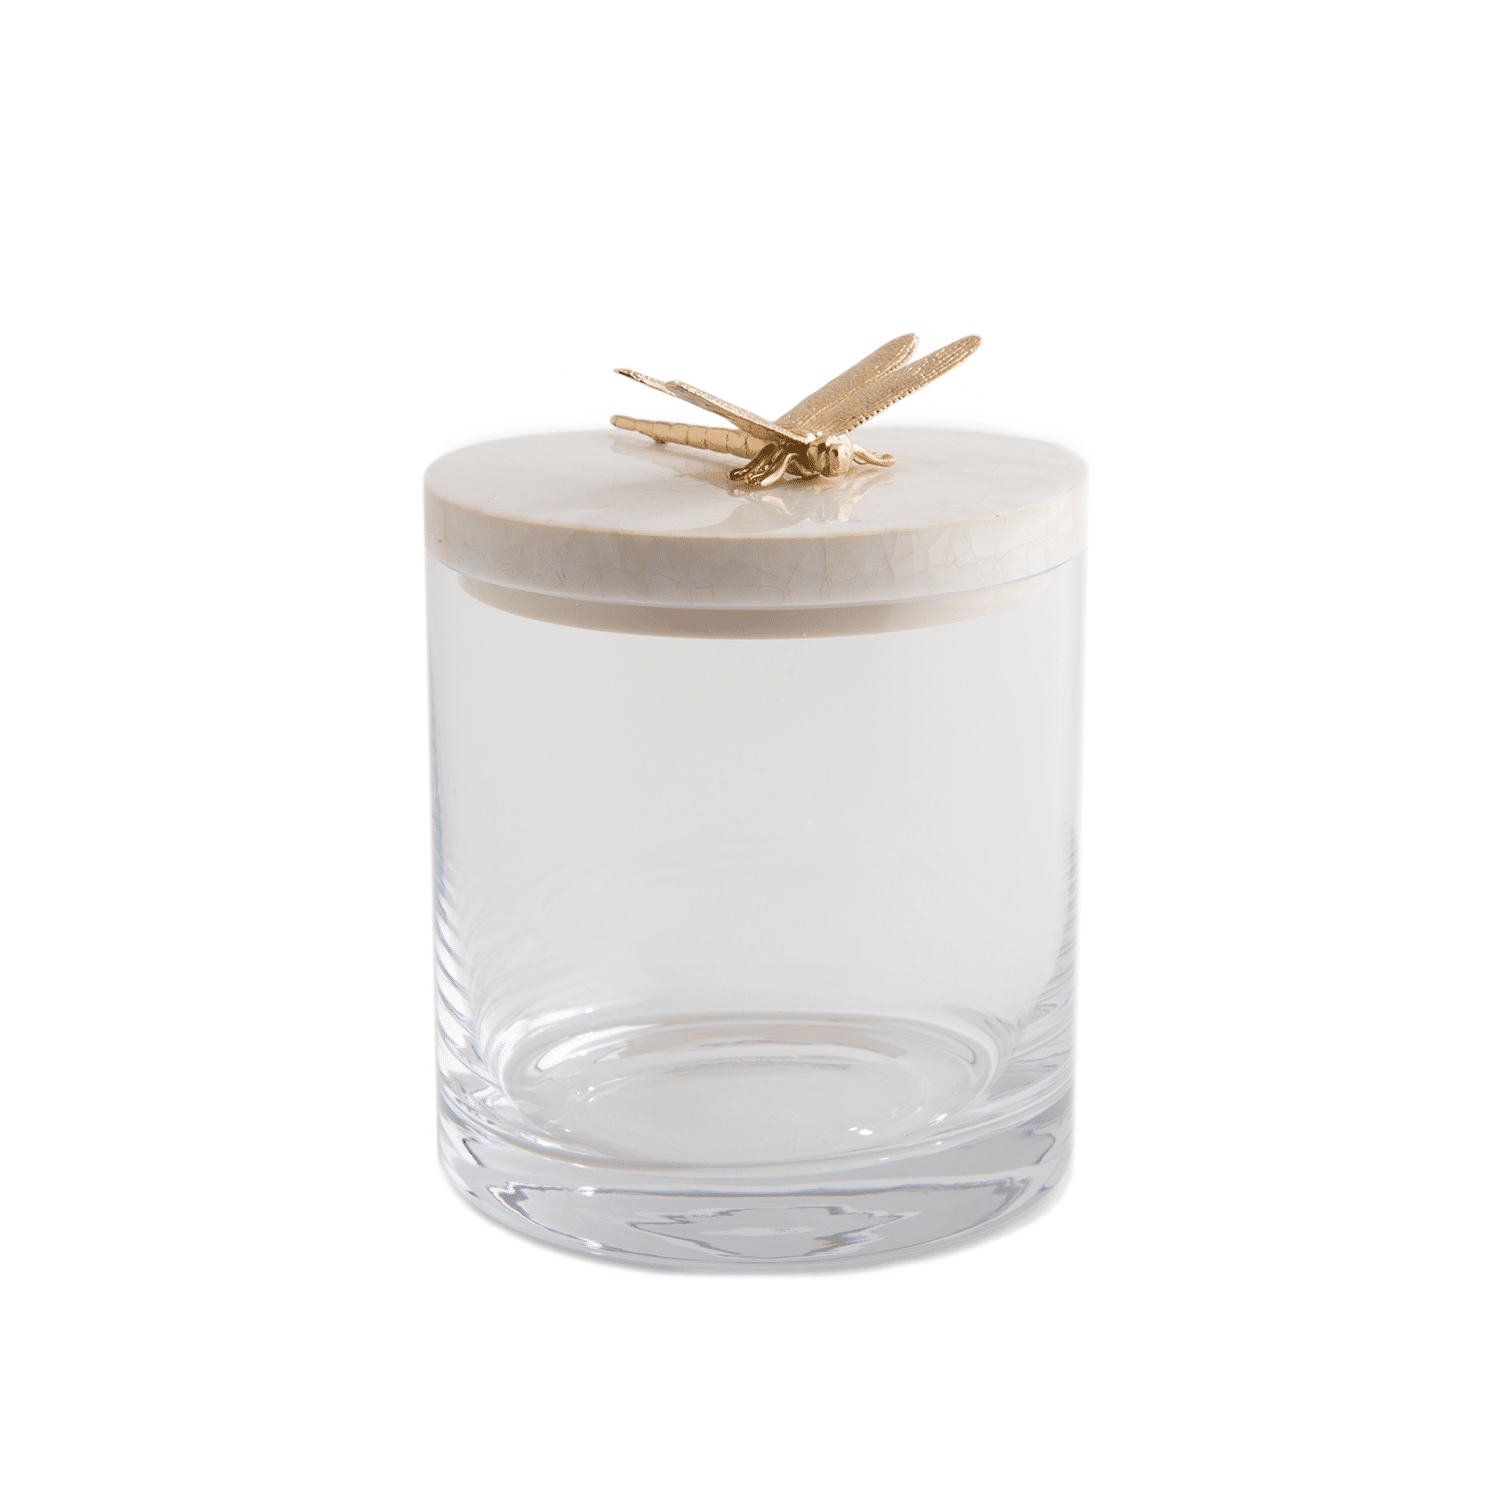 Luxury bathroom storage jar